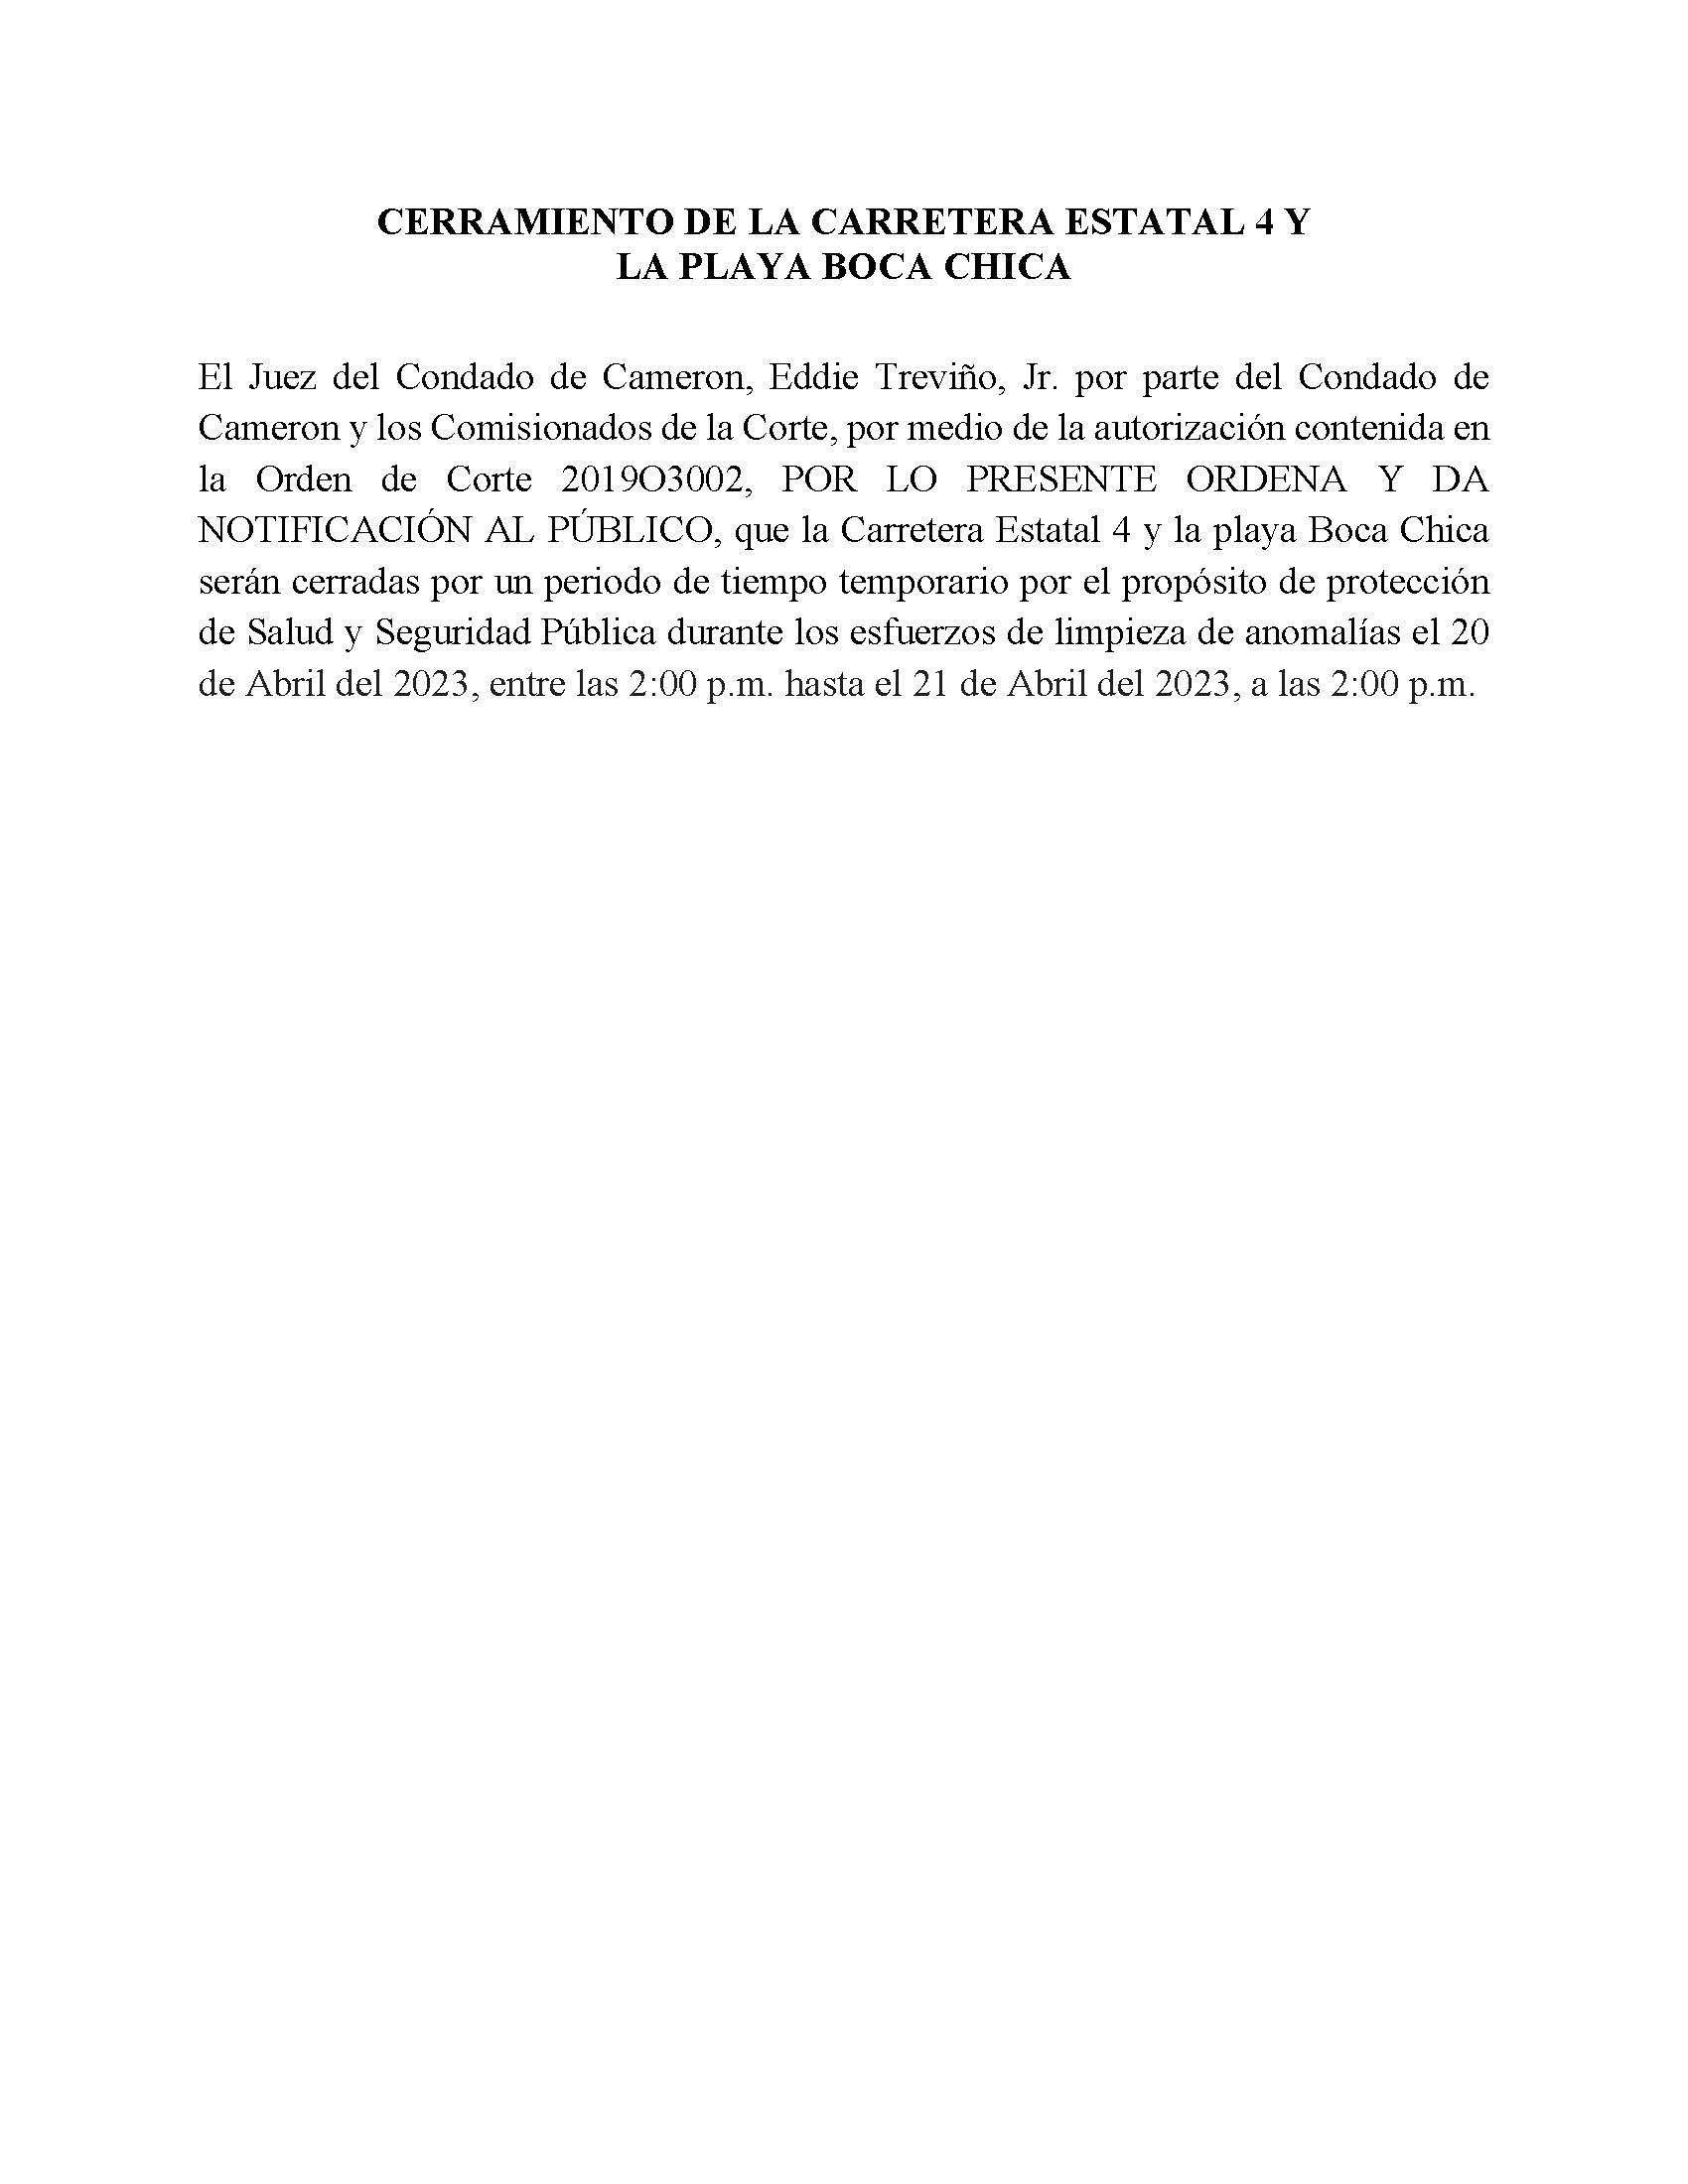 ORDER.CLOSURE OF HIGHWAY 4 Y LA PLAYA BOCA CHICA.SPANISH.esfuerzos De Limpieza De Anomalias.04.20.23